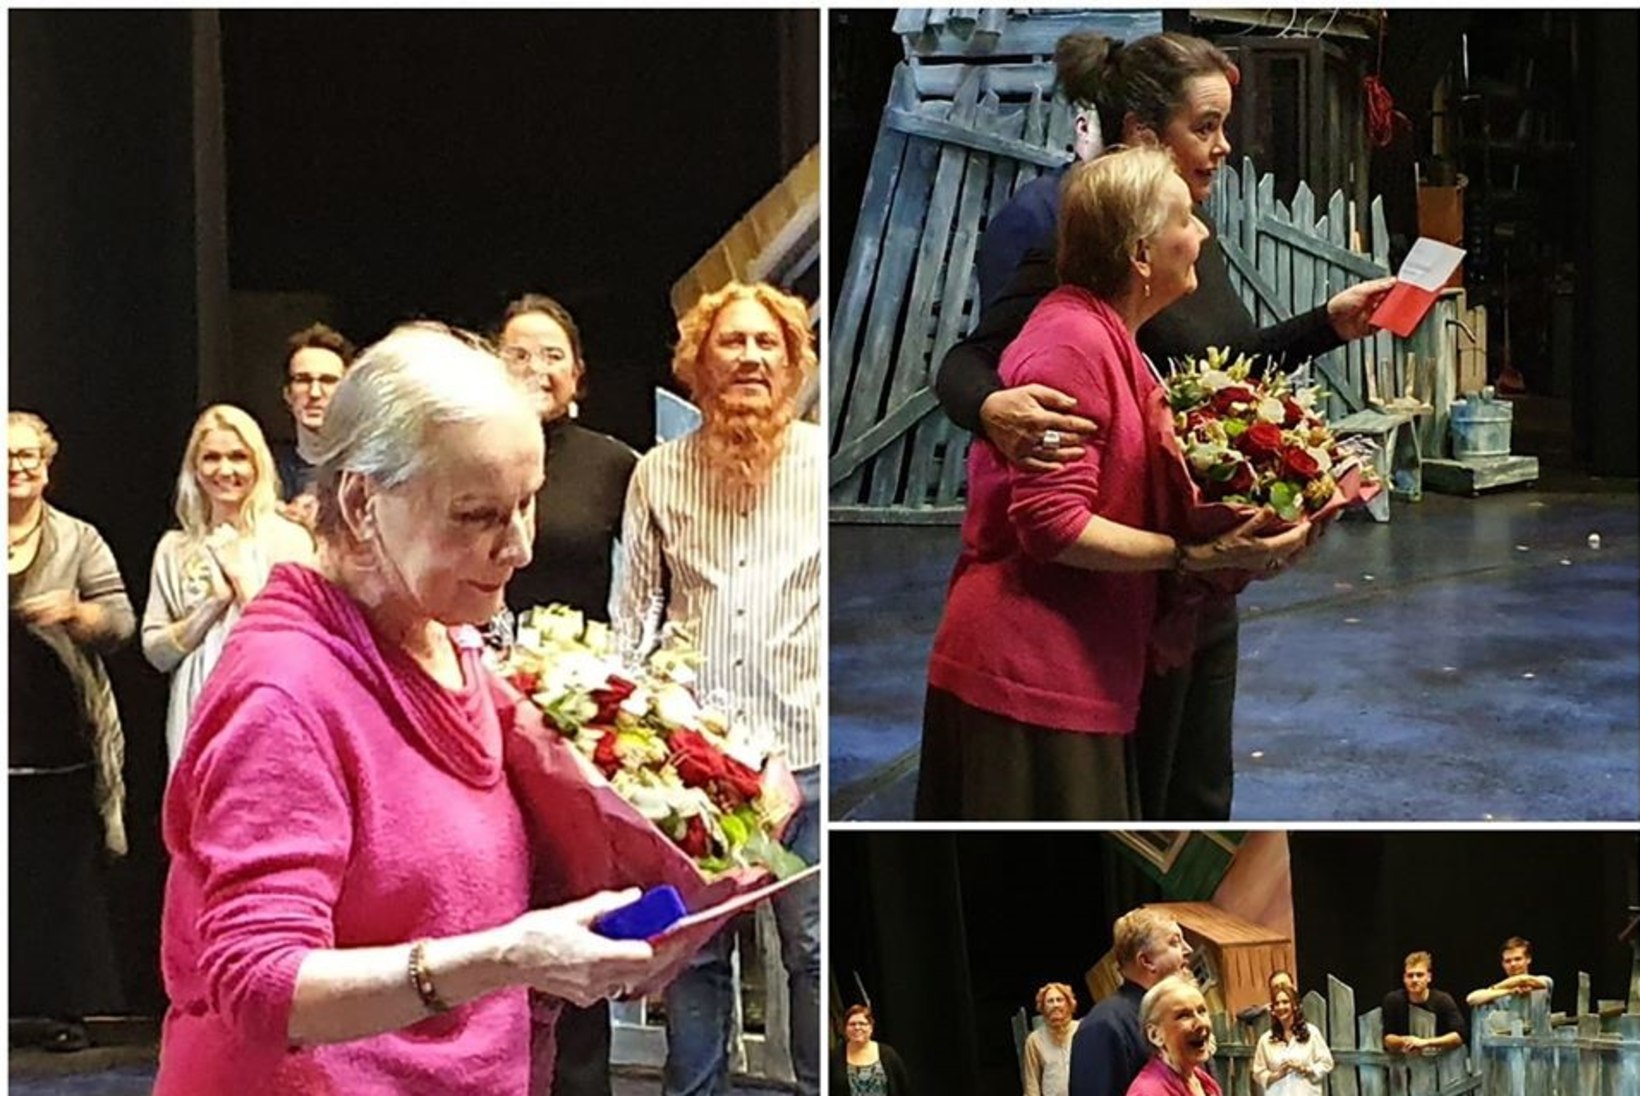 FOTOD | 55 AASTAT LAVAL! Kolleegid õnnitlesid Helgi Sallot lillesülemite ja kallistustega